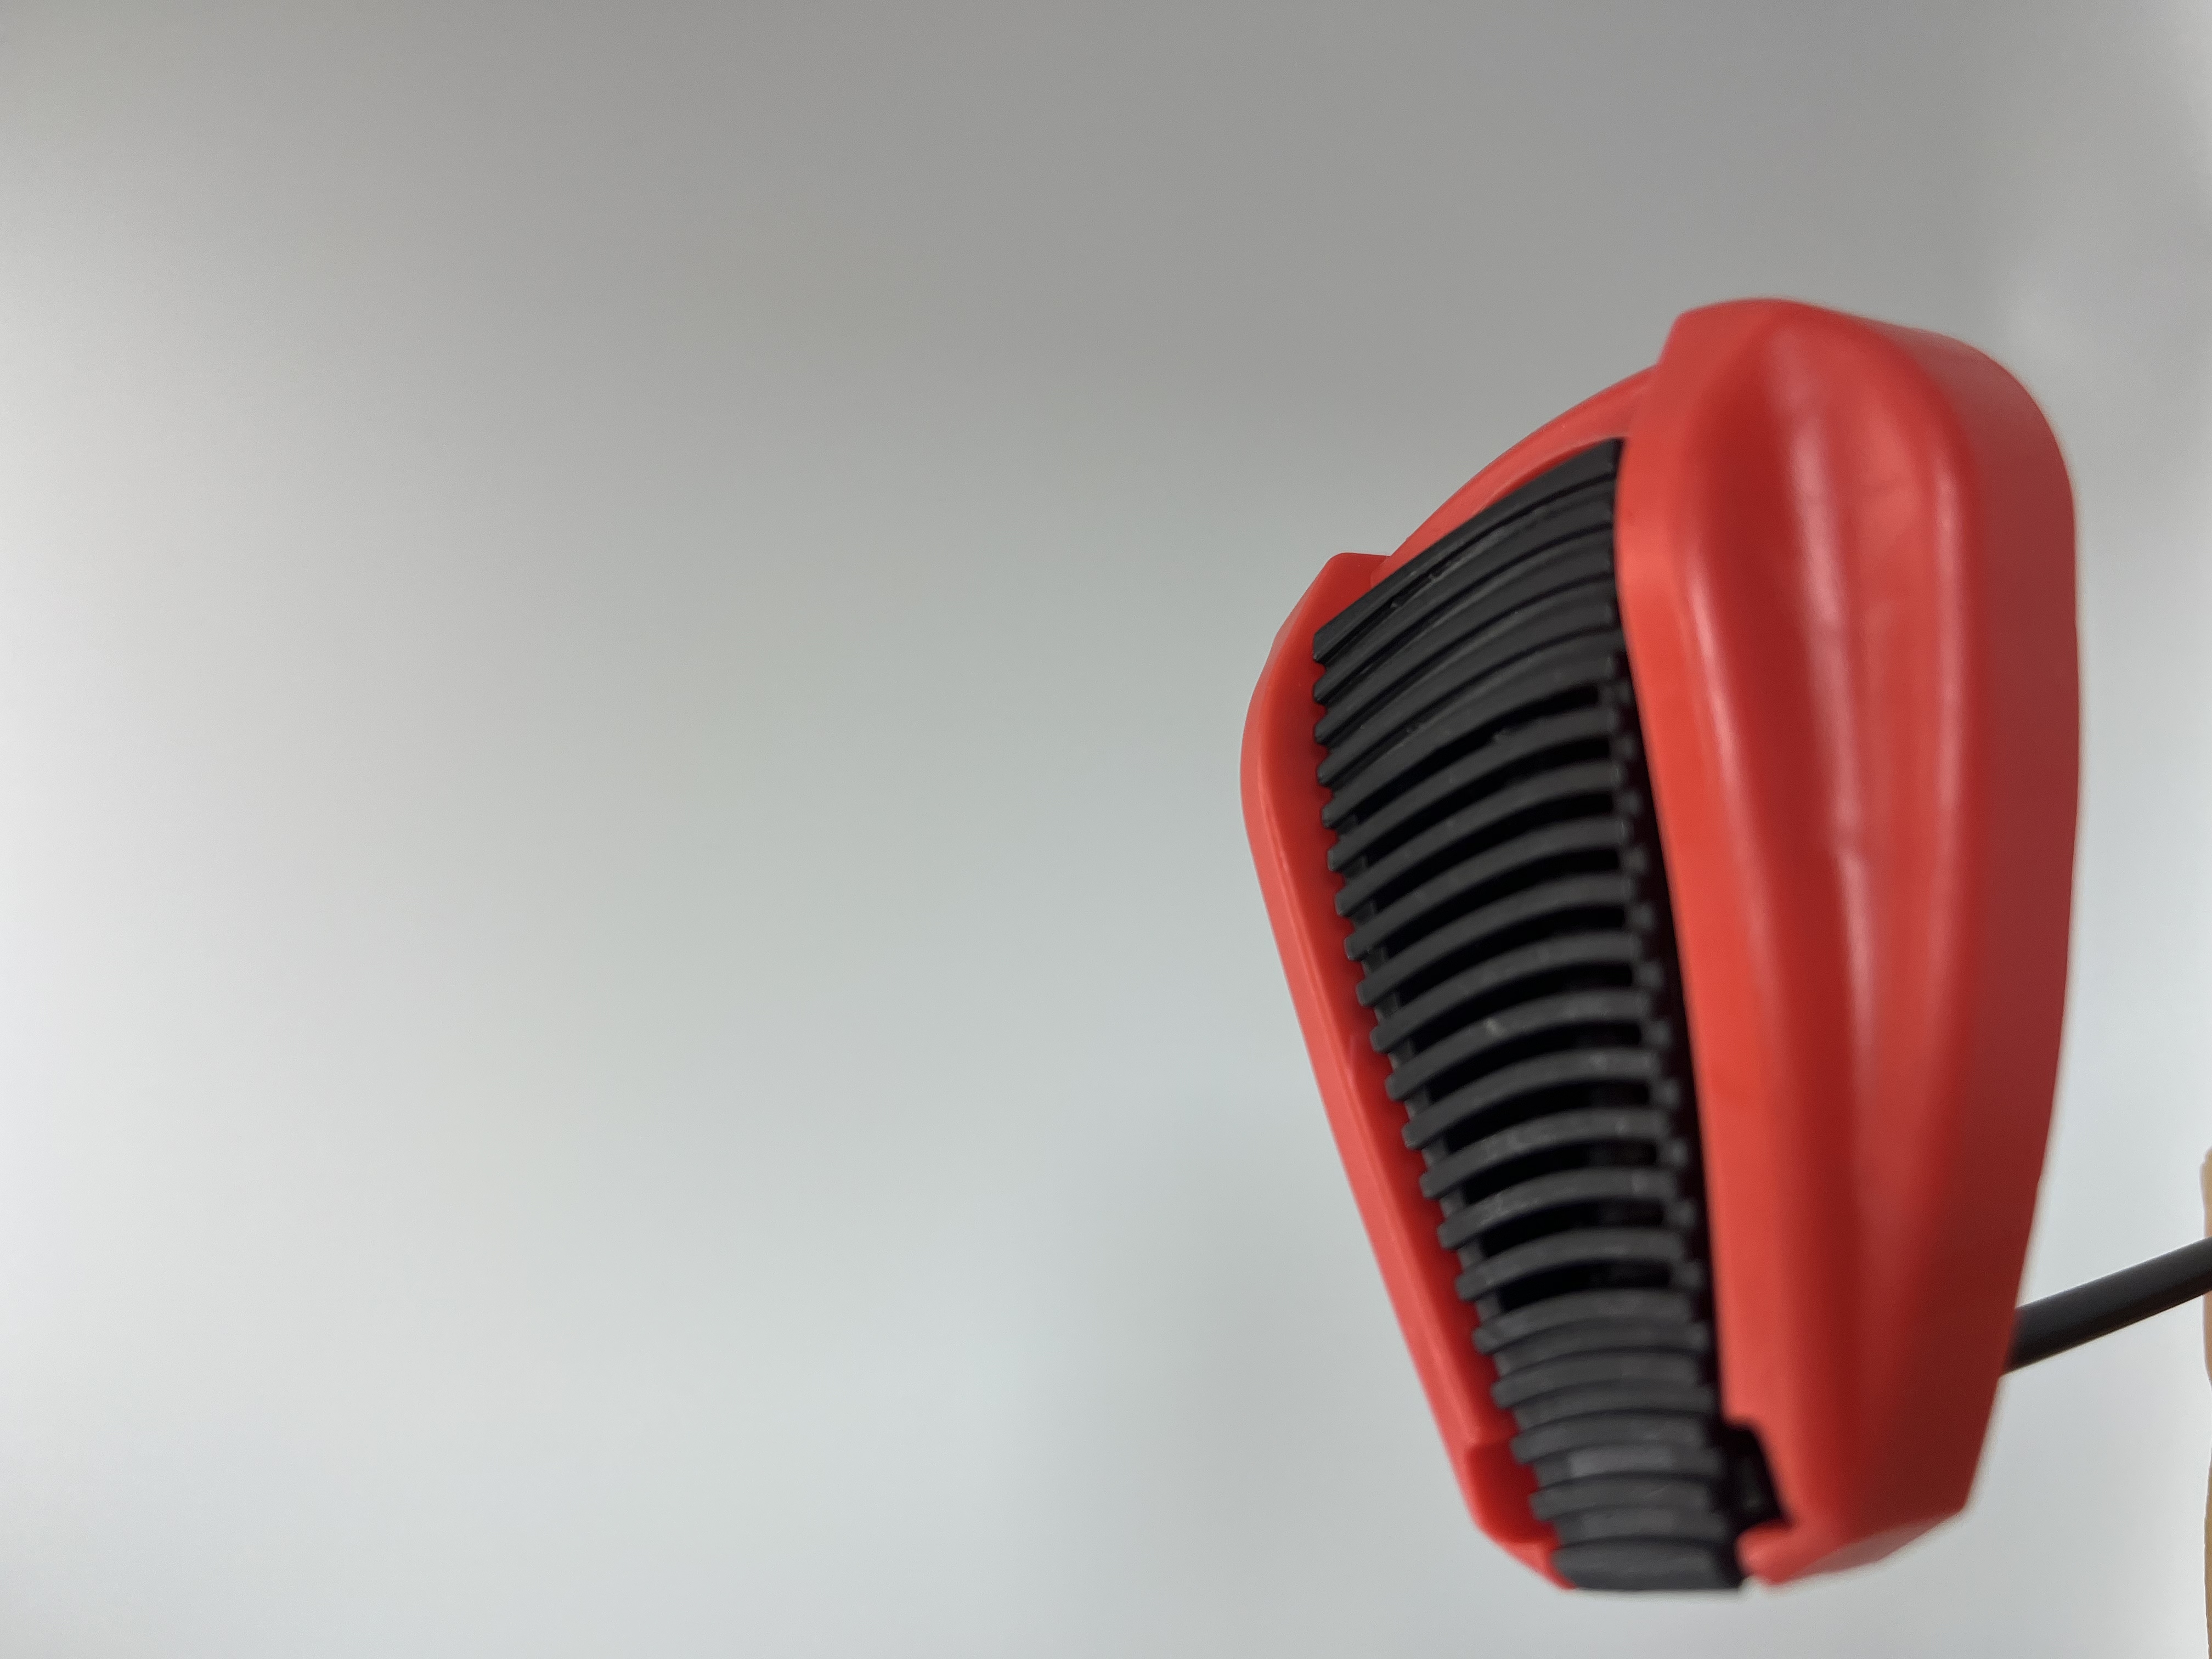 Bico de spray de spray de ventilador ajustável - cobertura ampla para aplicação eficiente